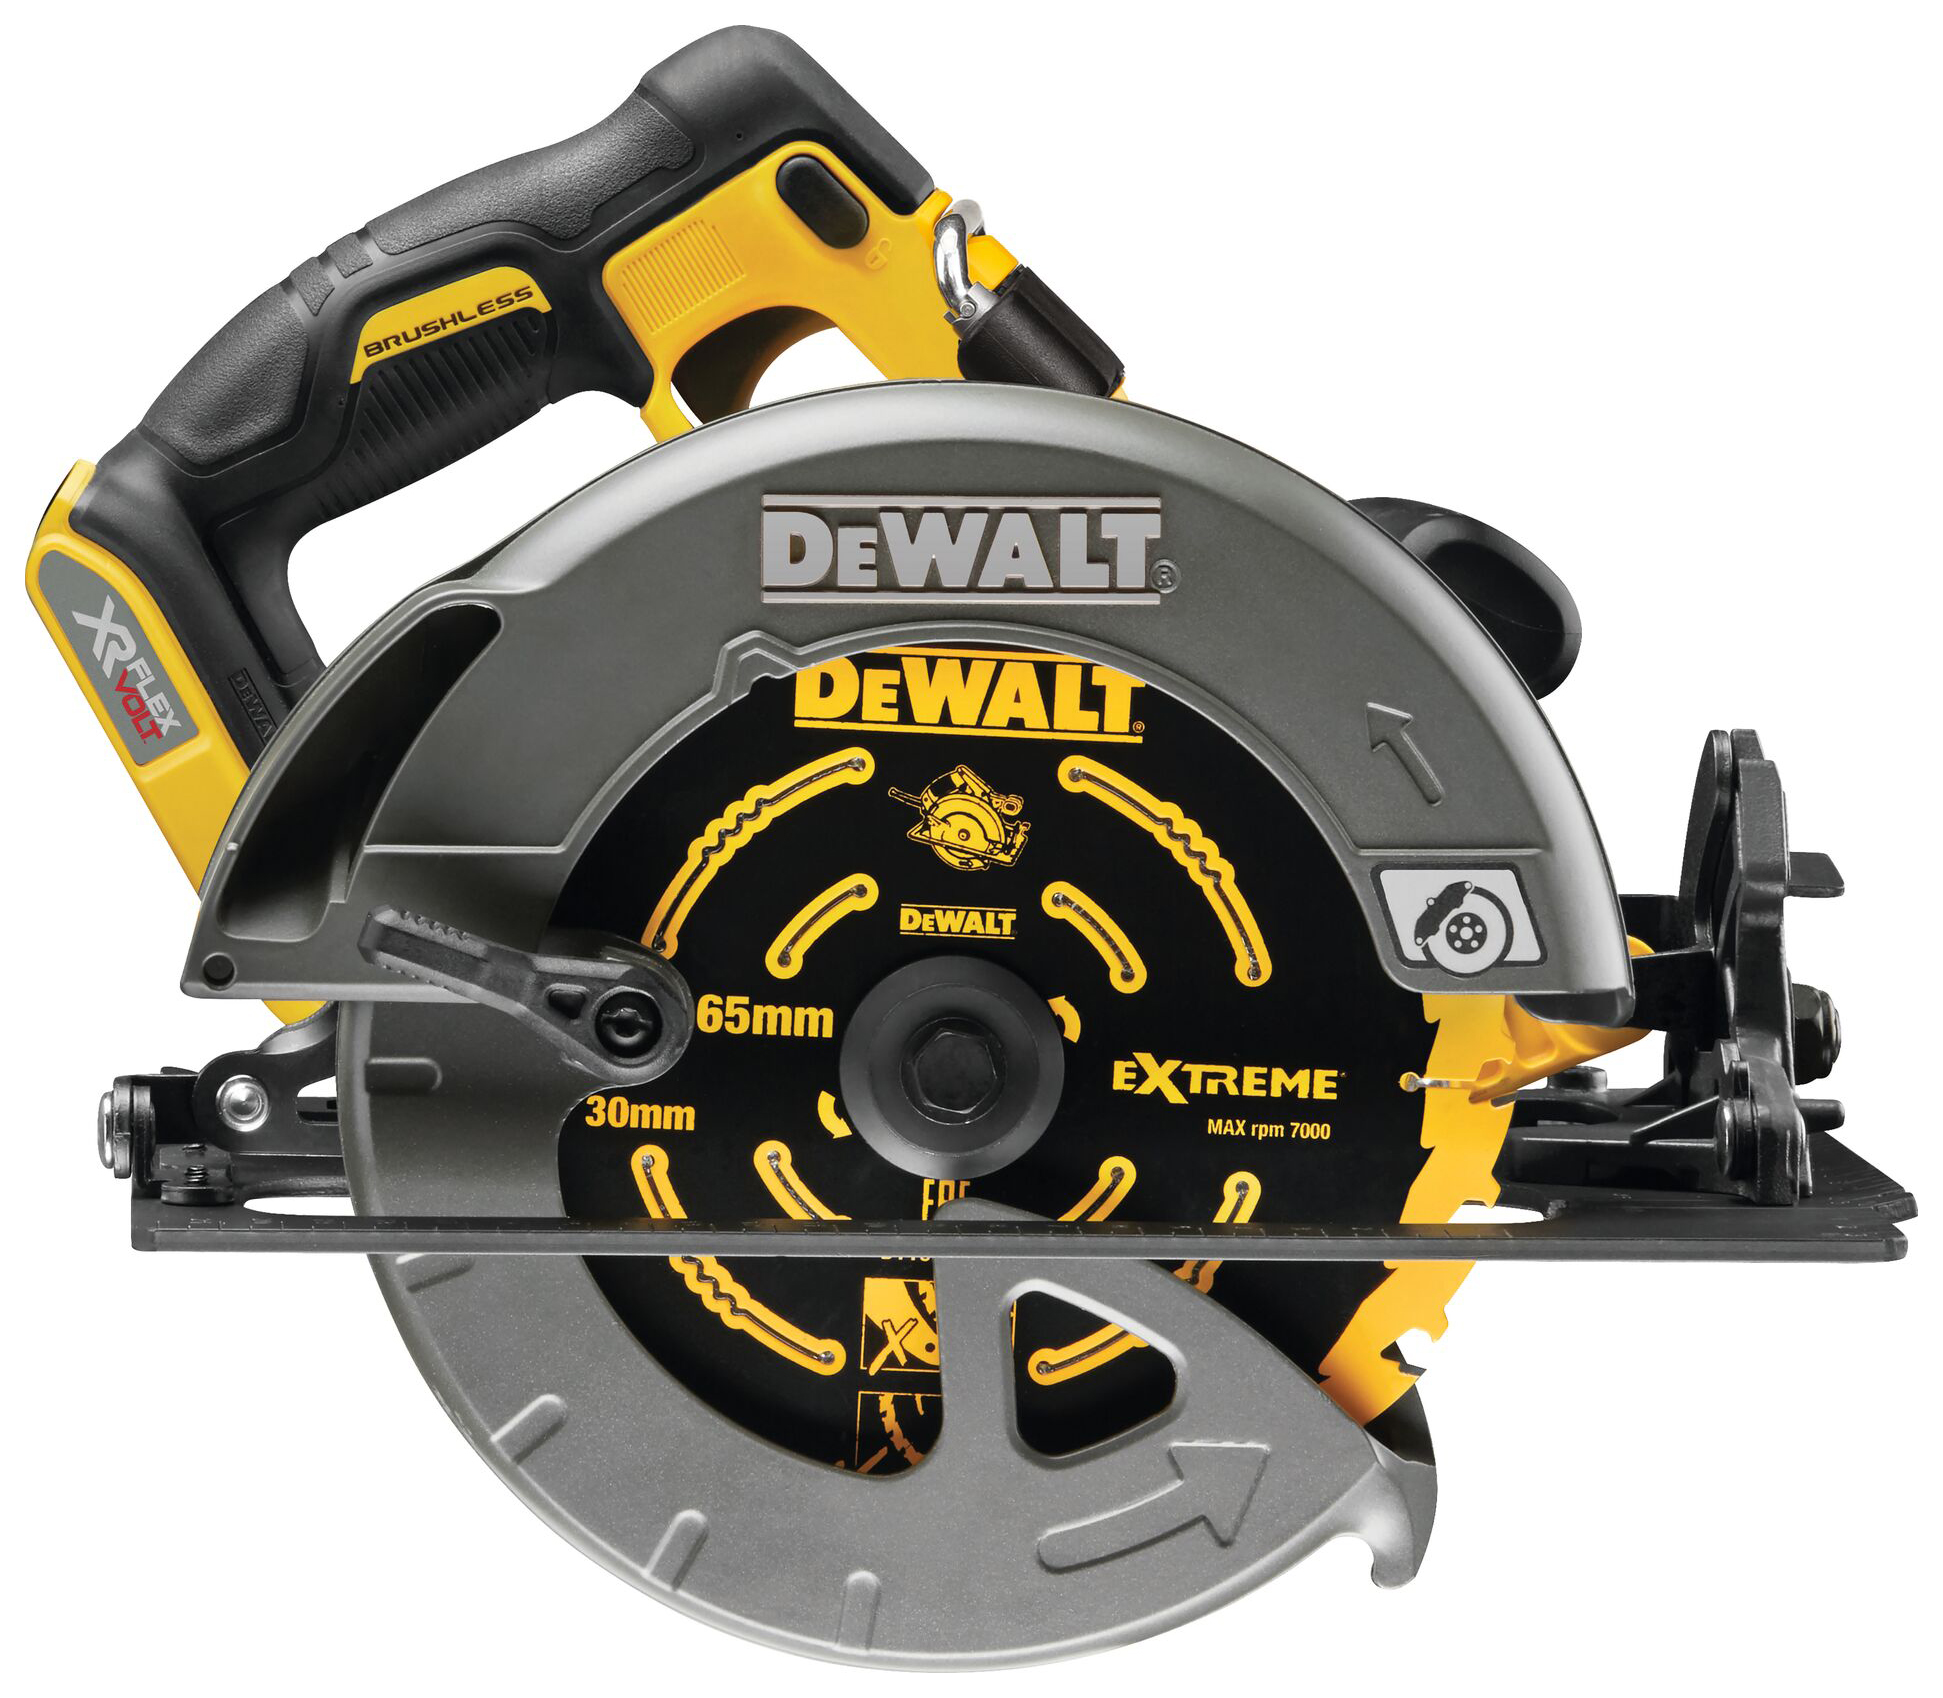 Image of DEWALT DCS578T2-GB 54V XR FLEXVOLT 2 X 6.0Ah Cordless 190mm Circular Saw